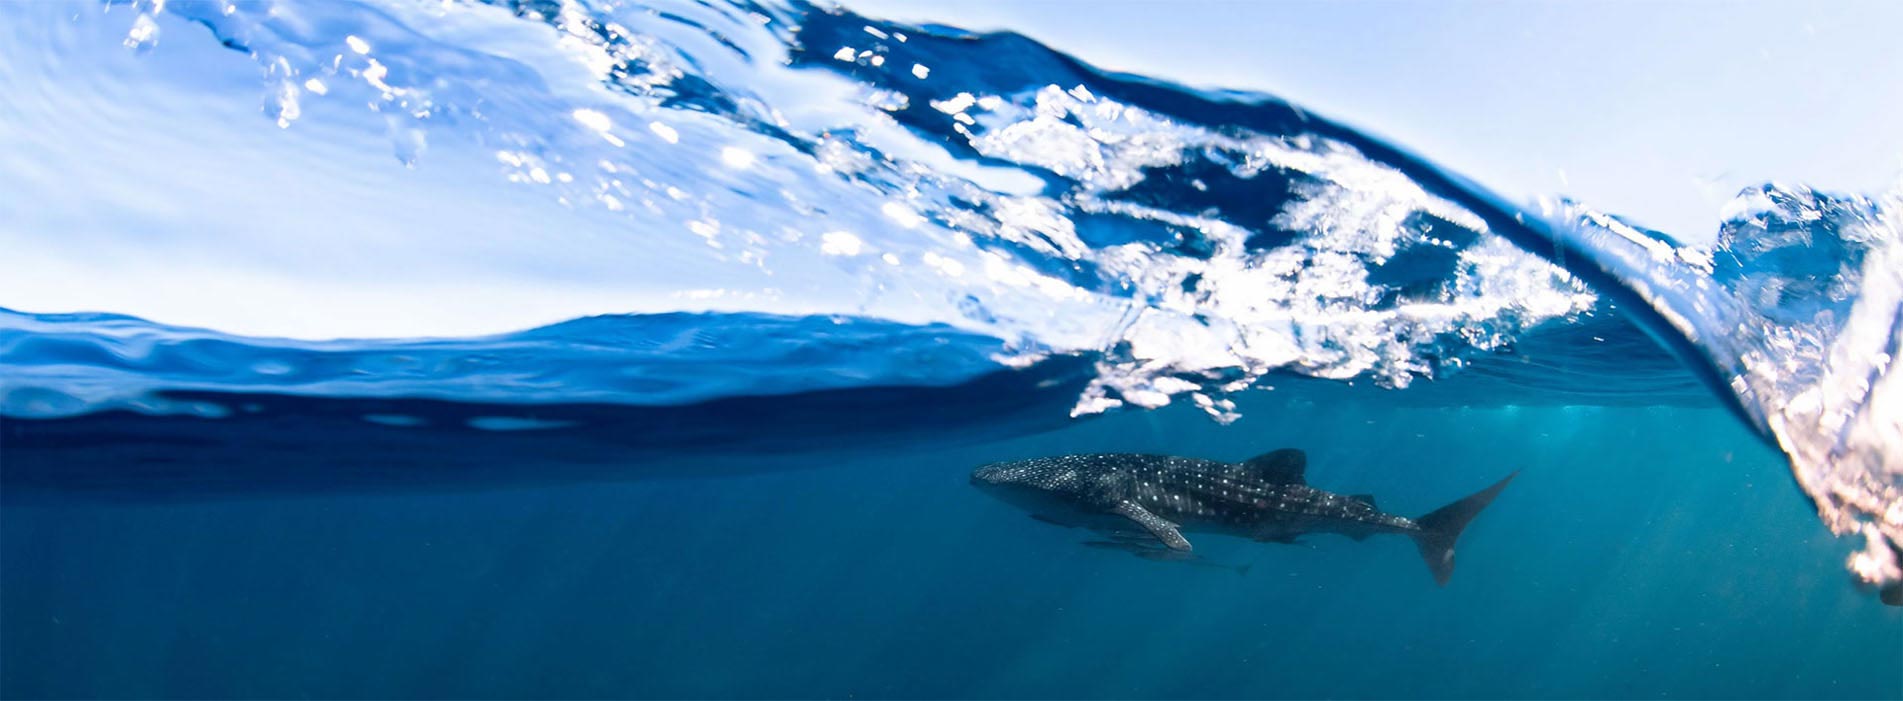 whale shark tours